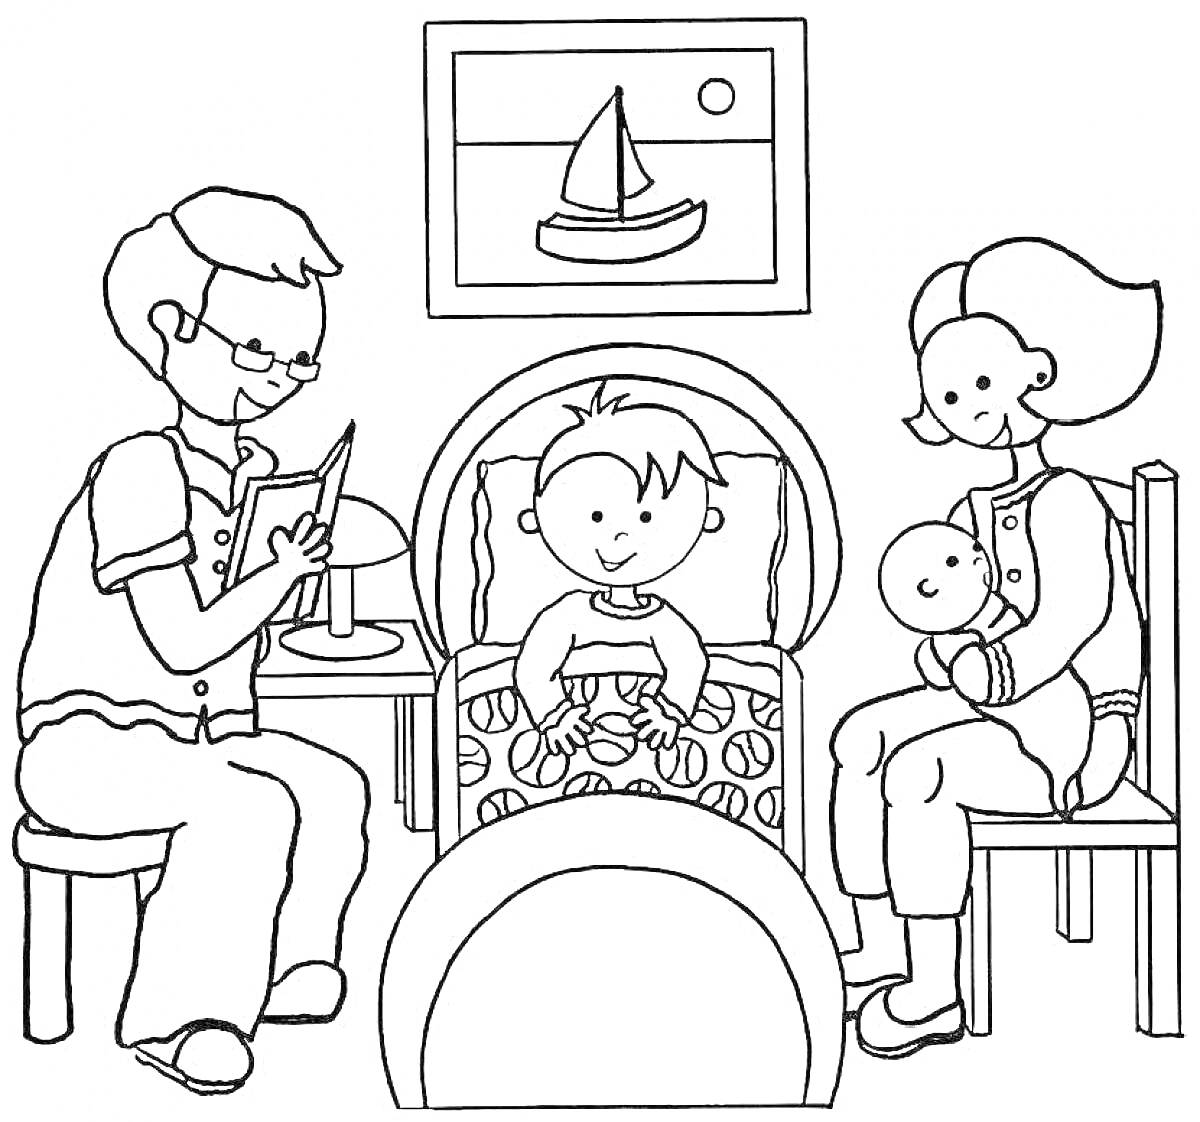 Раскраска Семья с детьми в спальне, папа читает книгу, мама держит младенца, ребенок в кровати